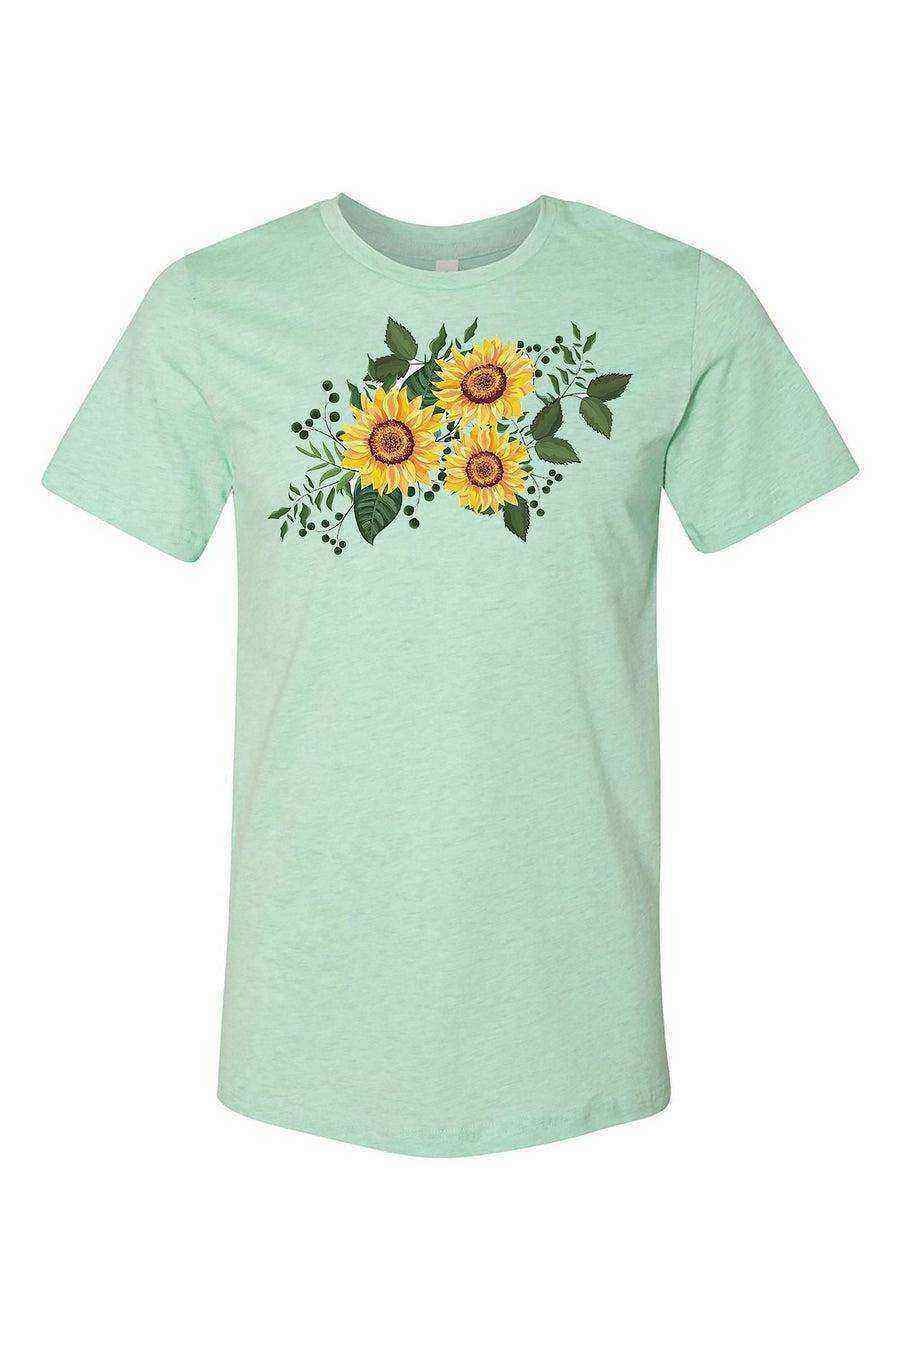 Womens | Sunflower Shirt | Floral Shirt - Dylan's Tees